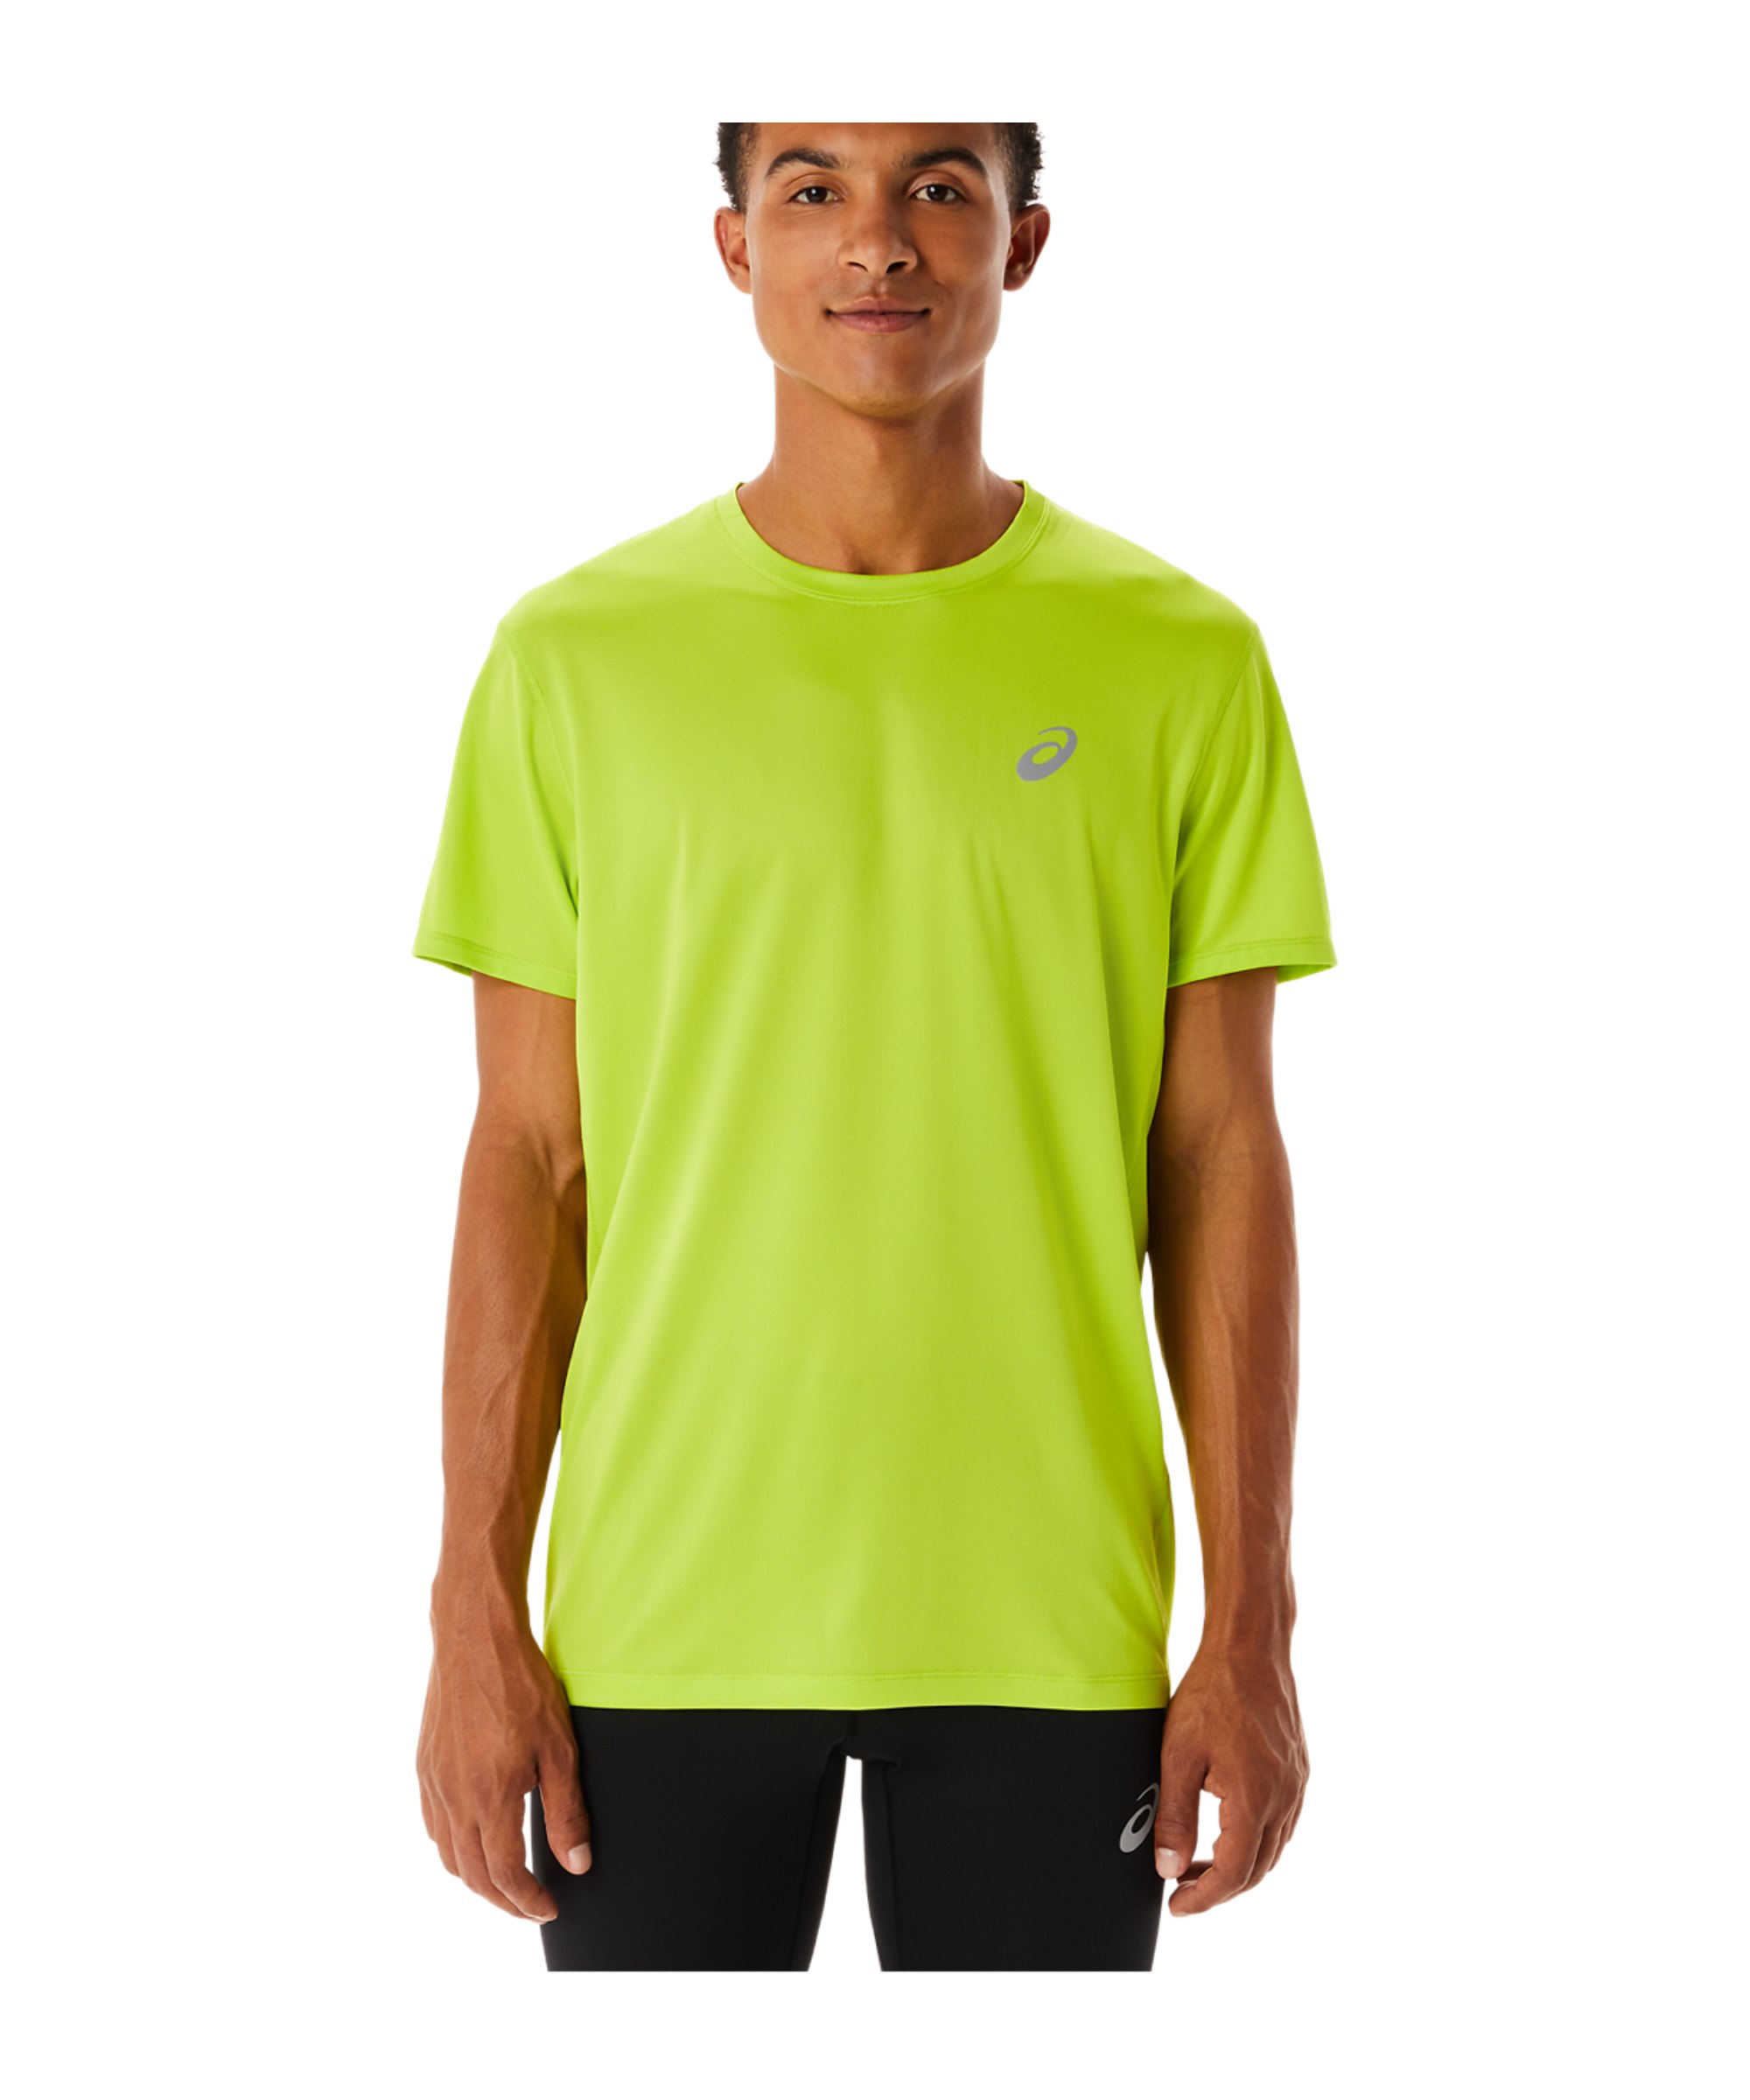 Asics Core T-Shirt Grün schwarz F302